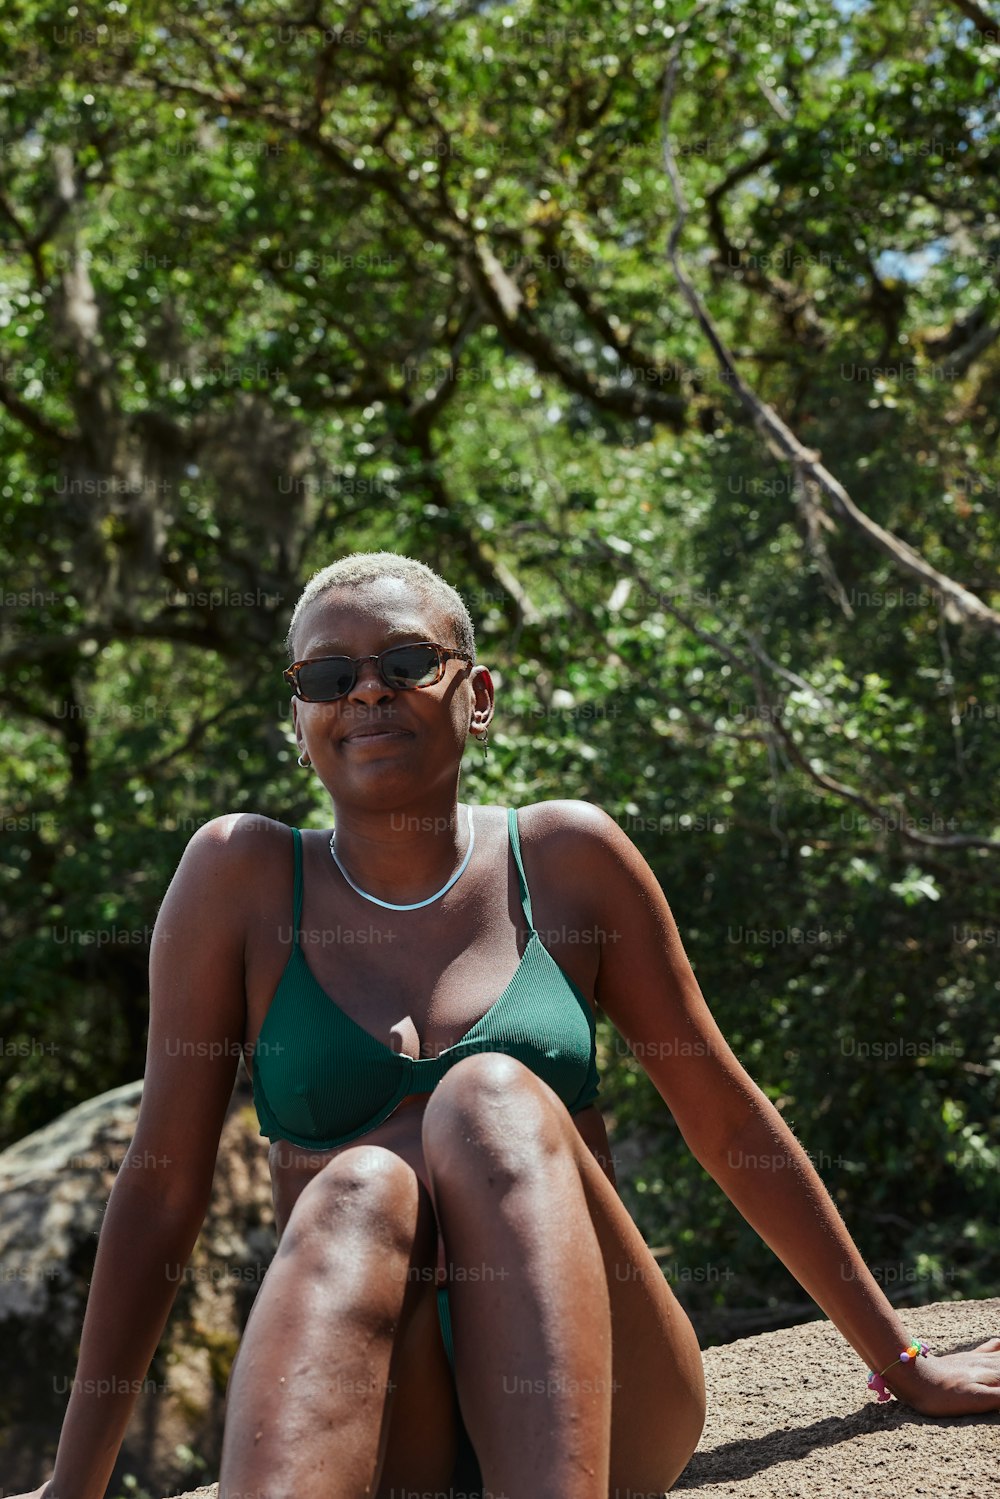 a woman in a green bikini sitting on a rock